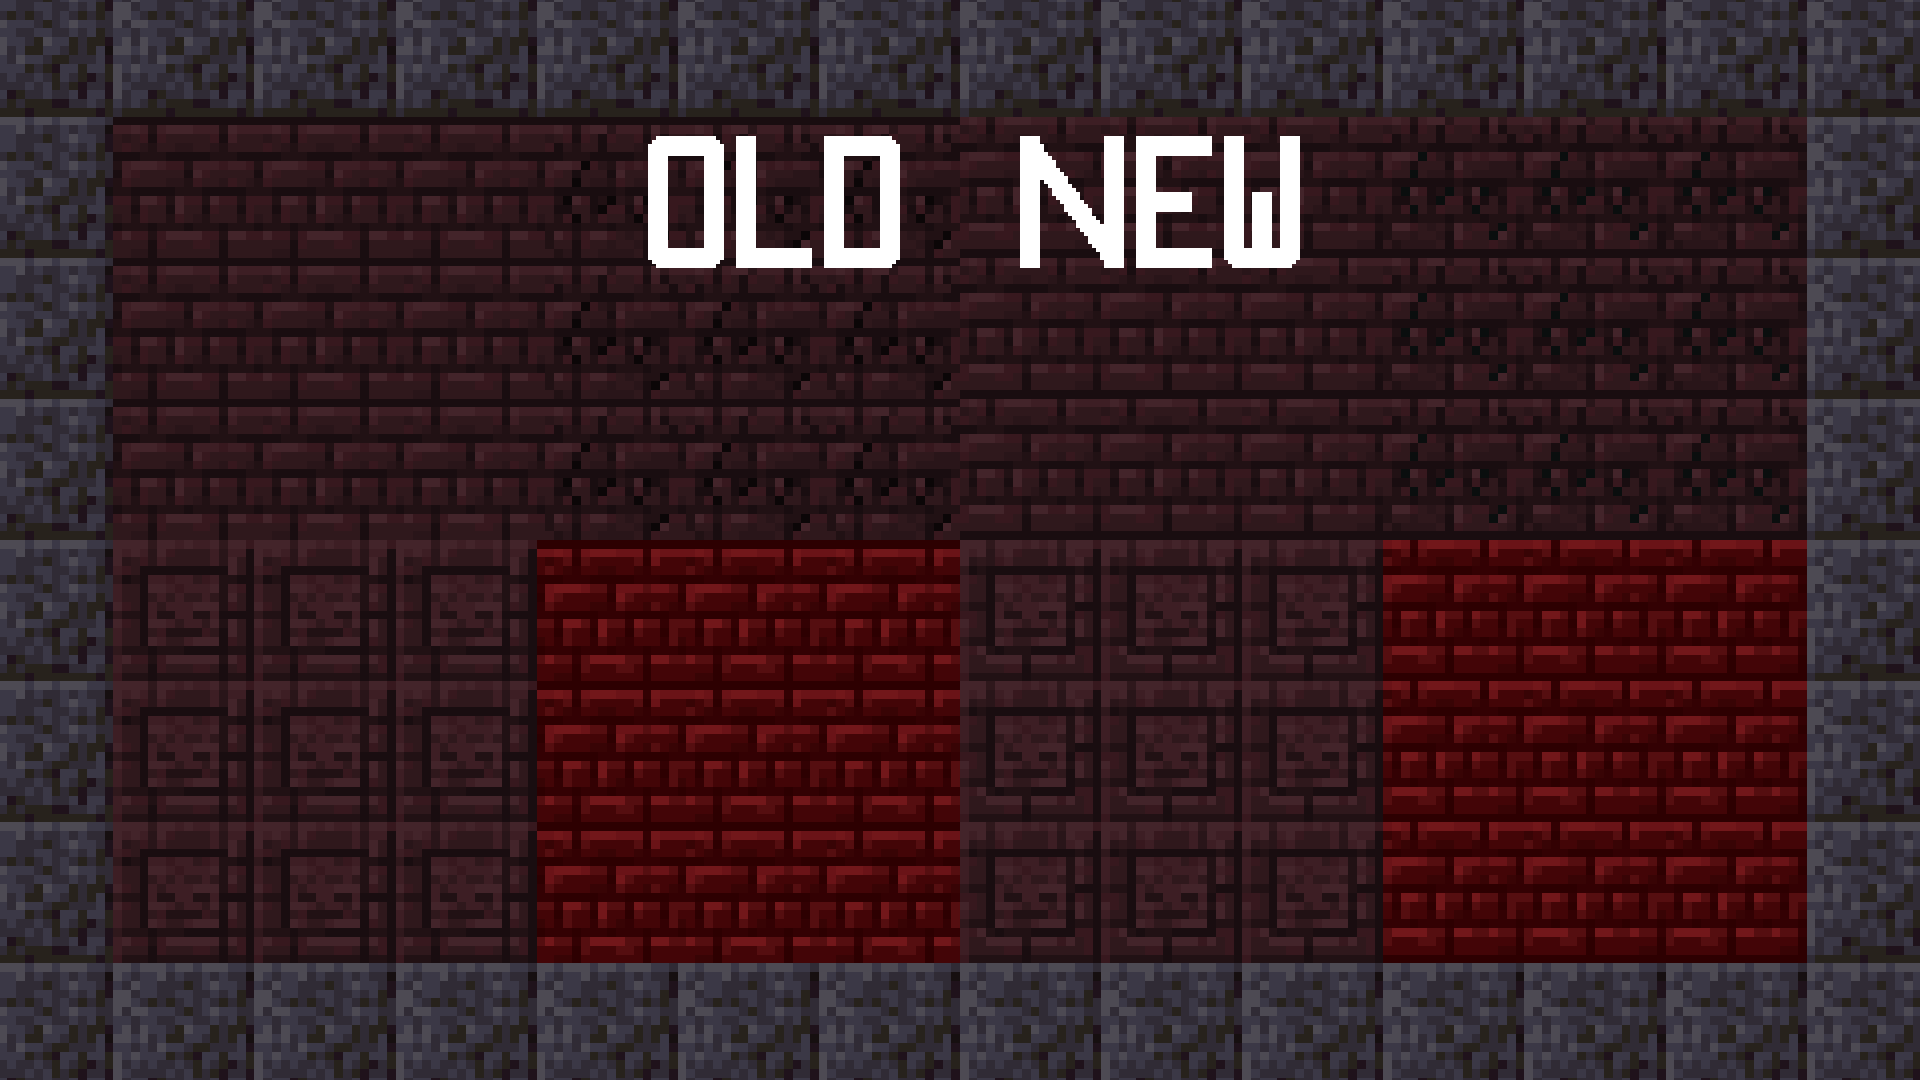 old vs new